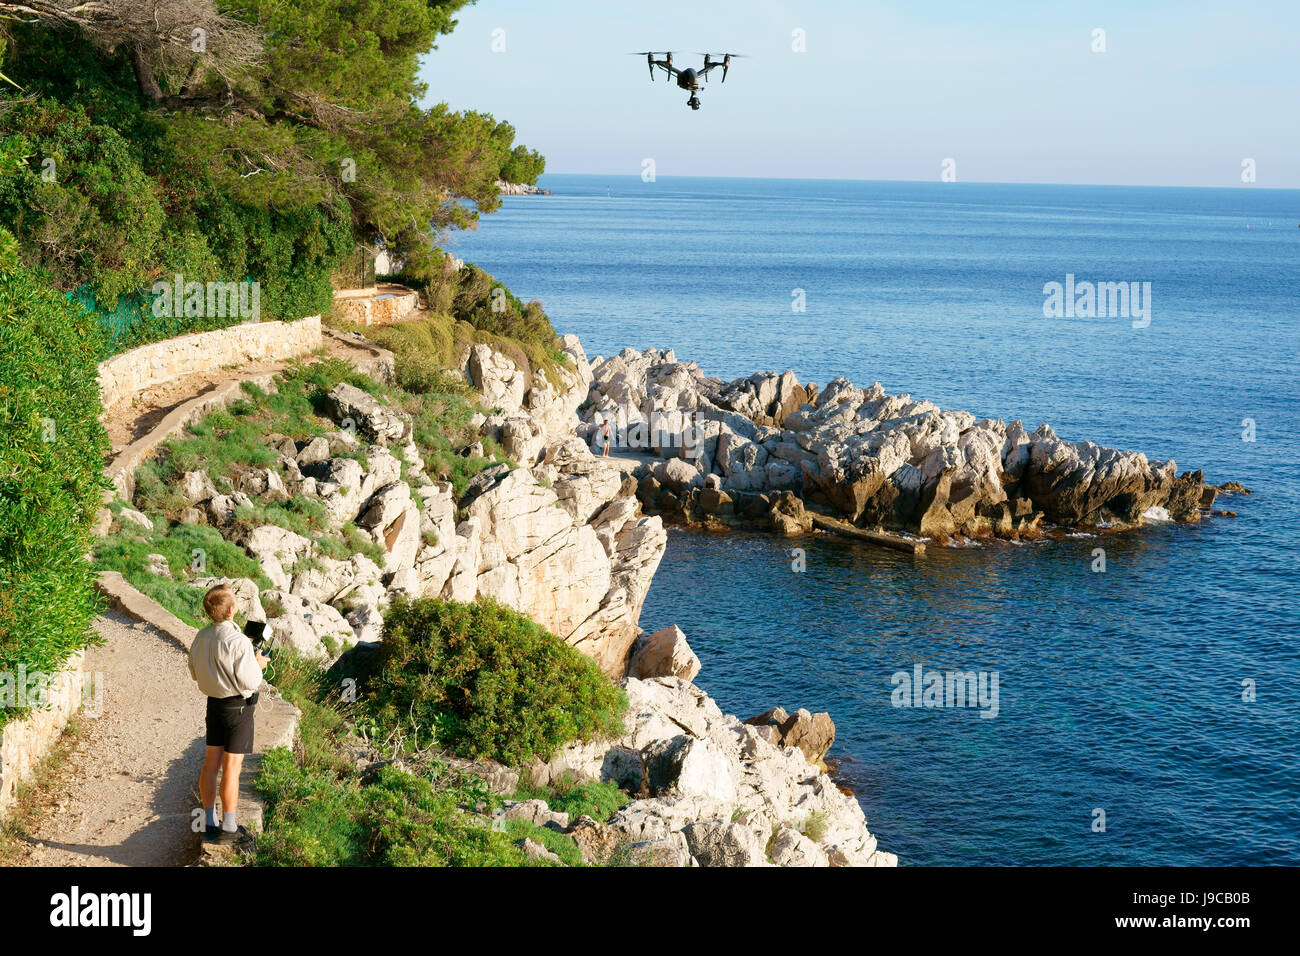 Mann, der ein unbemanntes Luftfahrzeug (Drohne) fliegt. Saint-Jean-Cap-Ferrat, Französische Riviera, Provence-Alpes-Côte d'Azur, Frankreich. Stockfoto